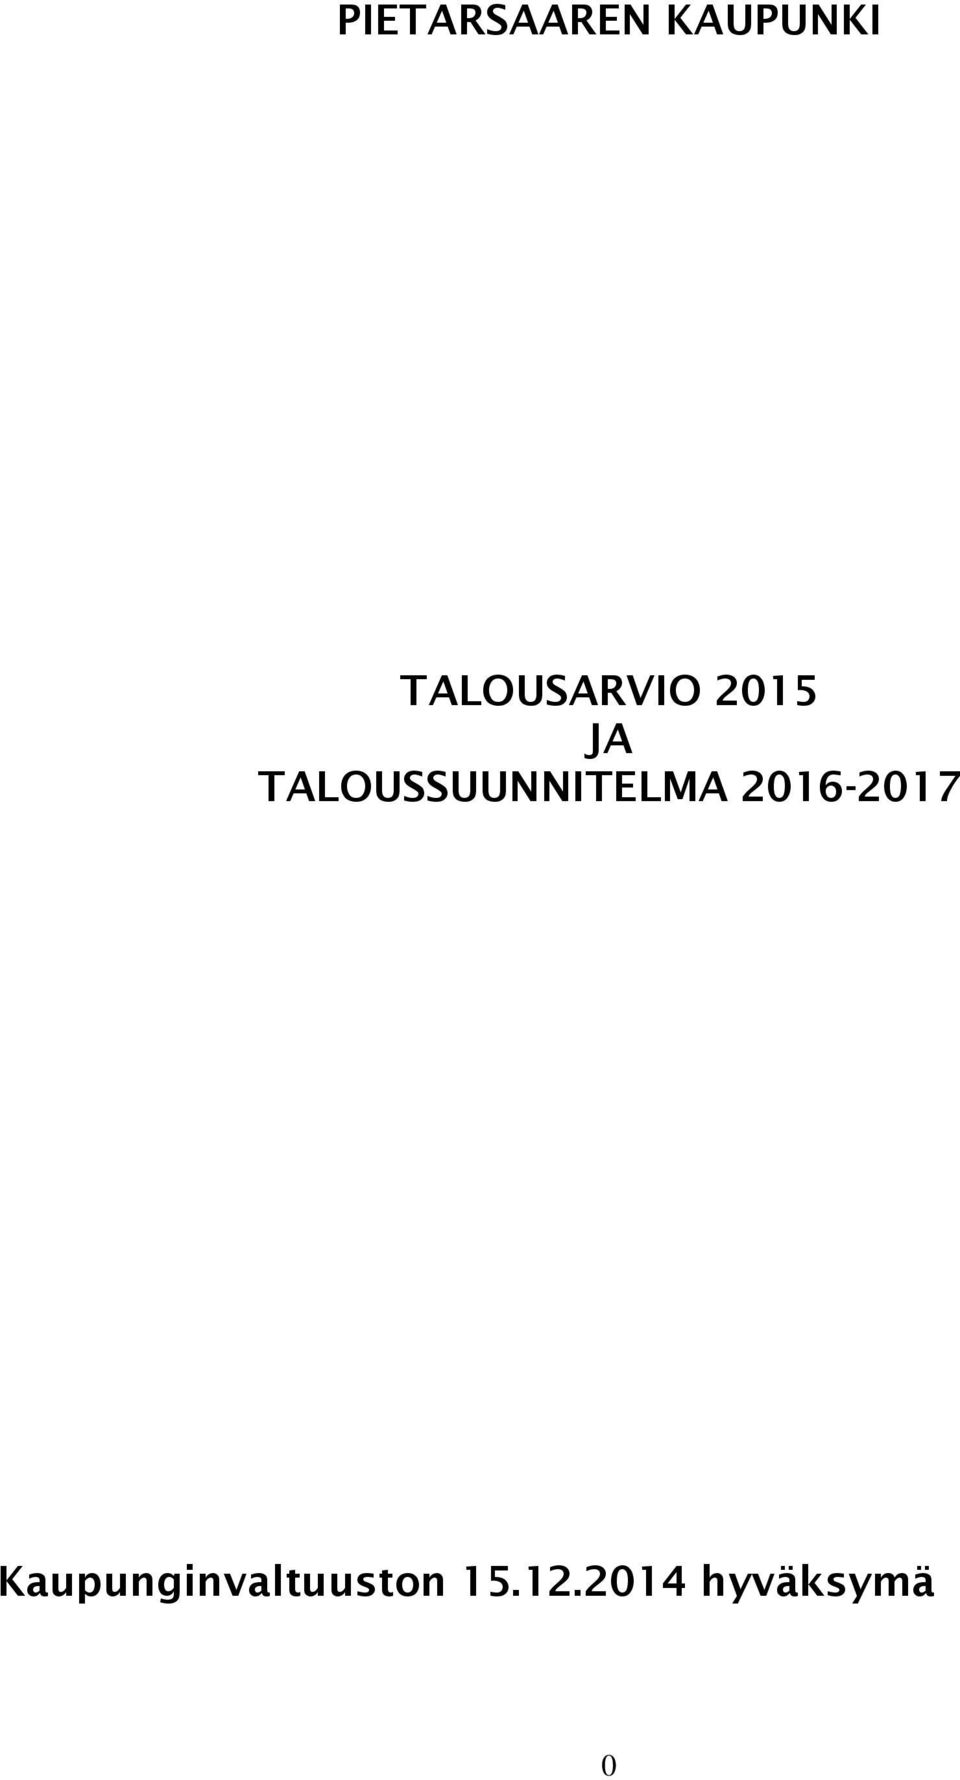 TALOUSSUUNNITELMA 2016-2017